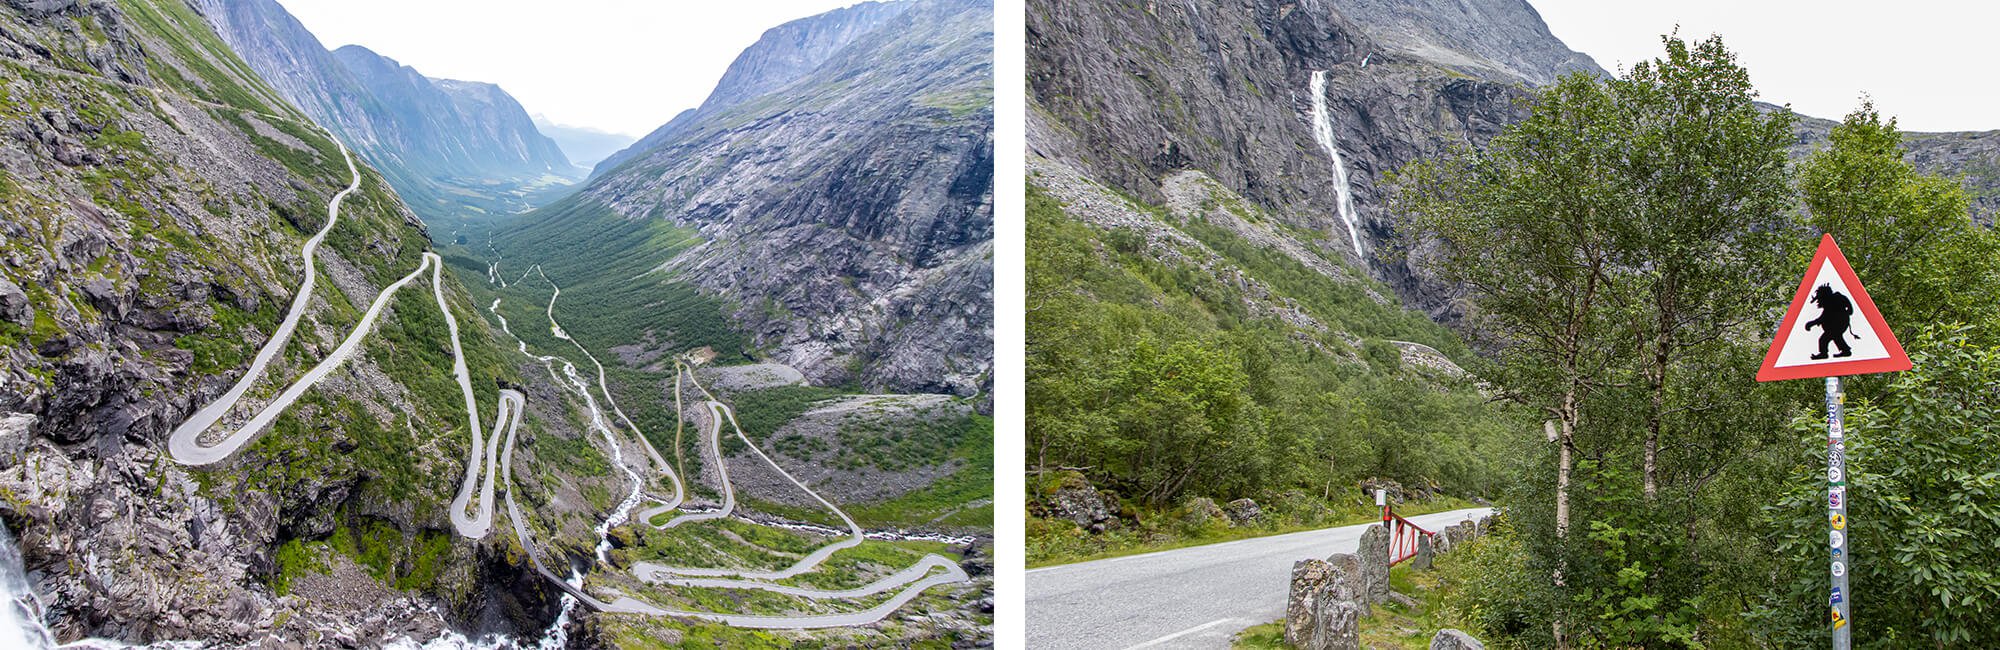 Workation in Norwegen, Fahrt hoch zum Trollstiegen über die Serpentinenstraße und Blick ins Tal